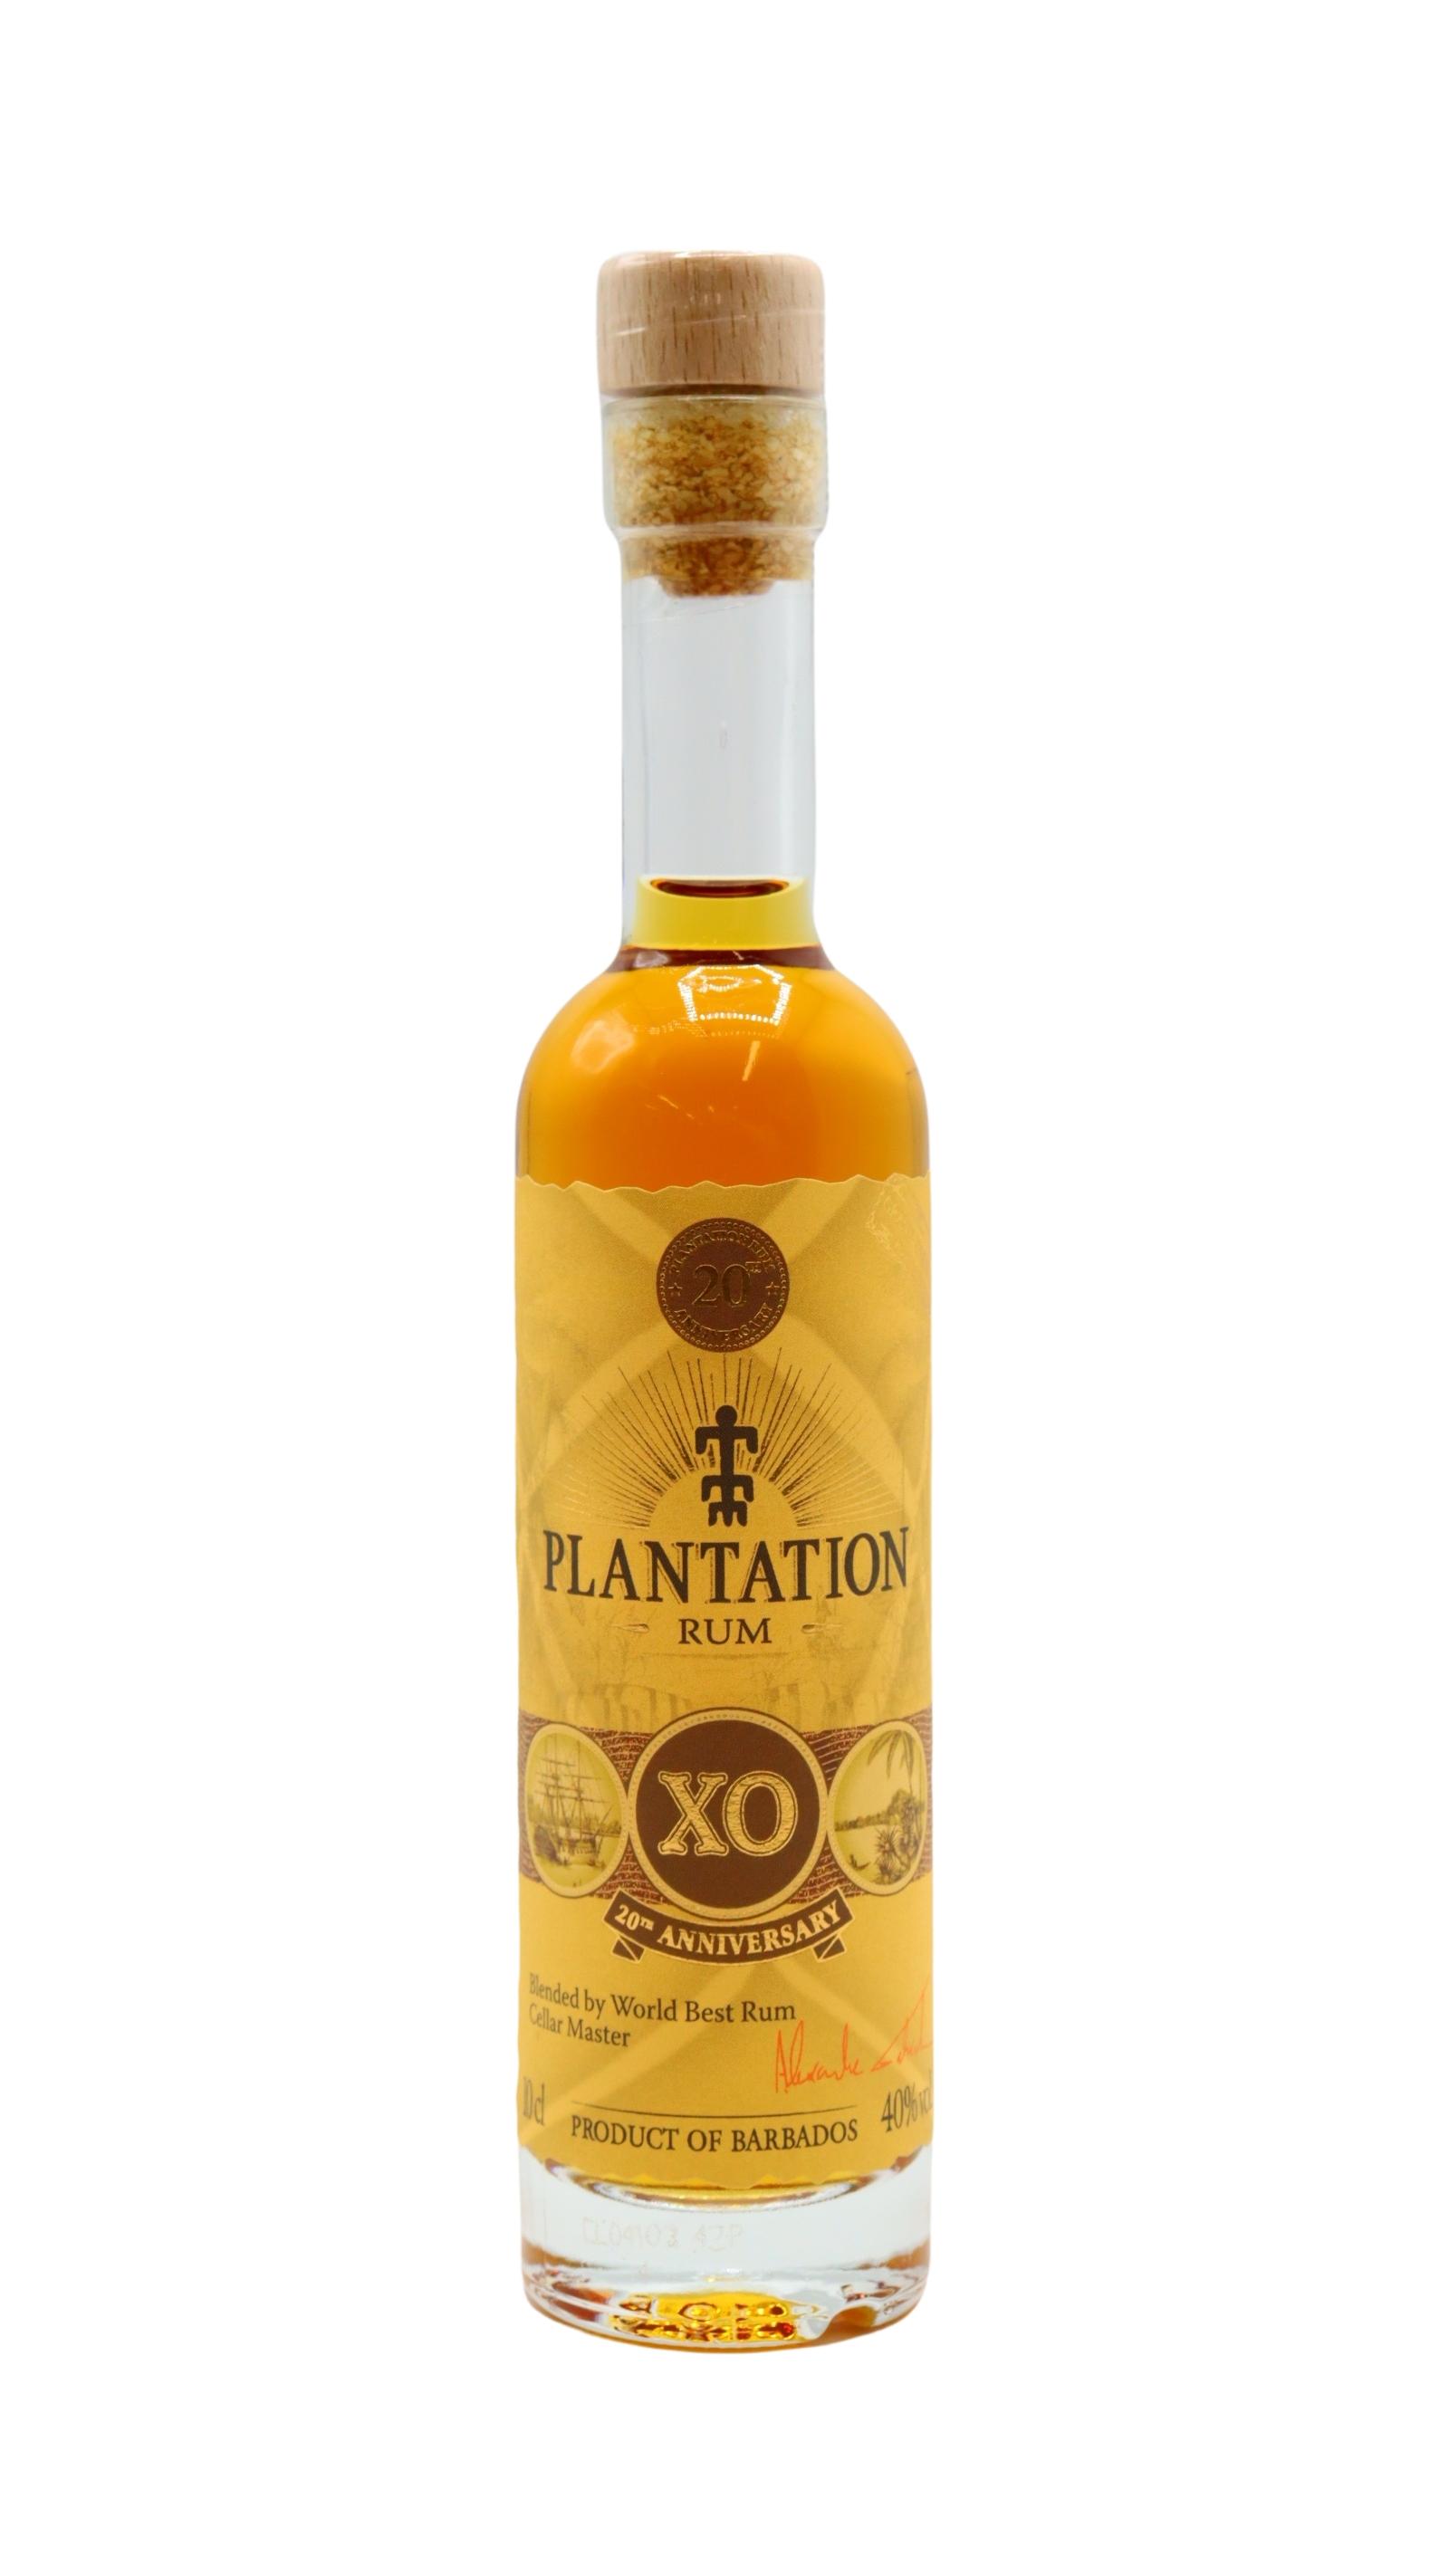 Plantation XO 20th Anniversary — Plantation Rum